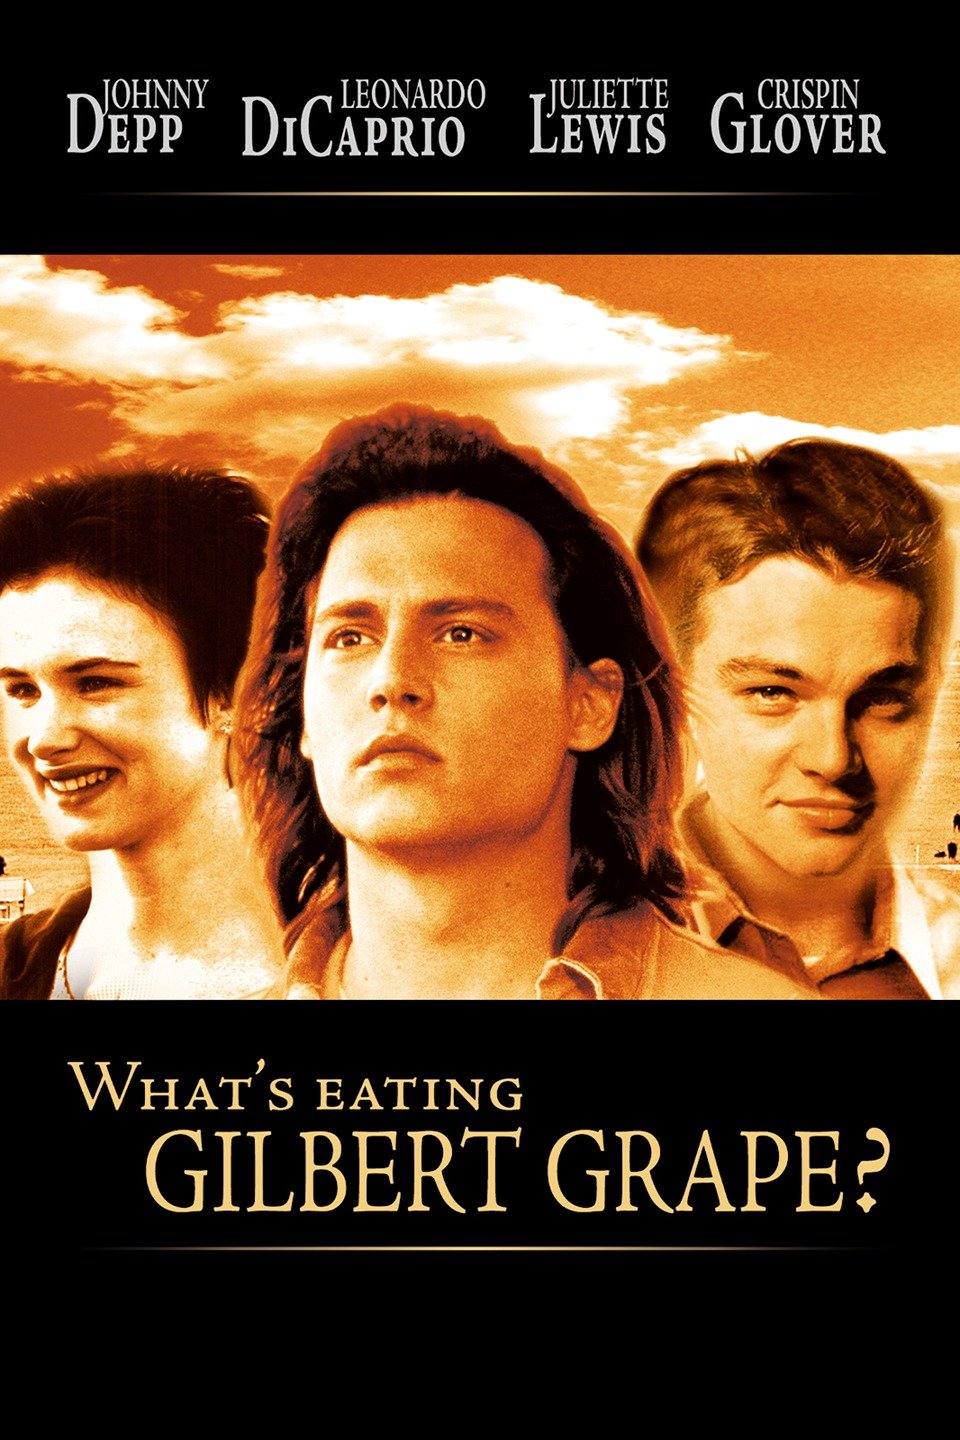 whats eating gilbert grape character analysis